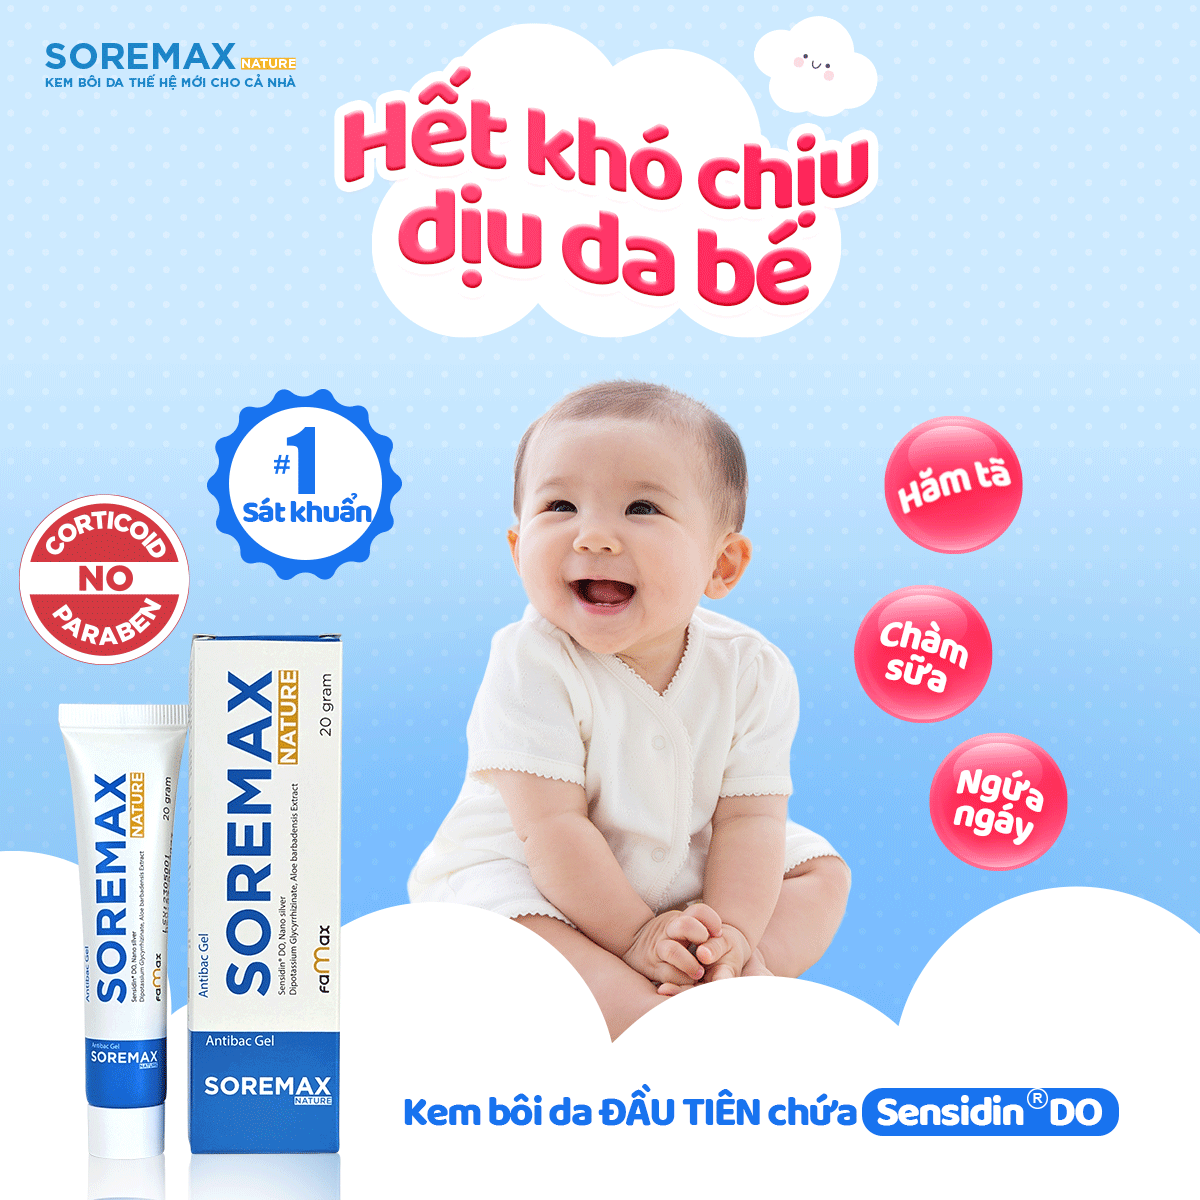 Kem chàm sữa Soremax an toàn lành tính với trẻ nhỏ